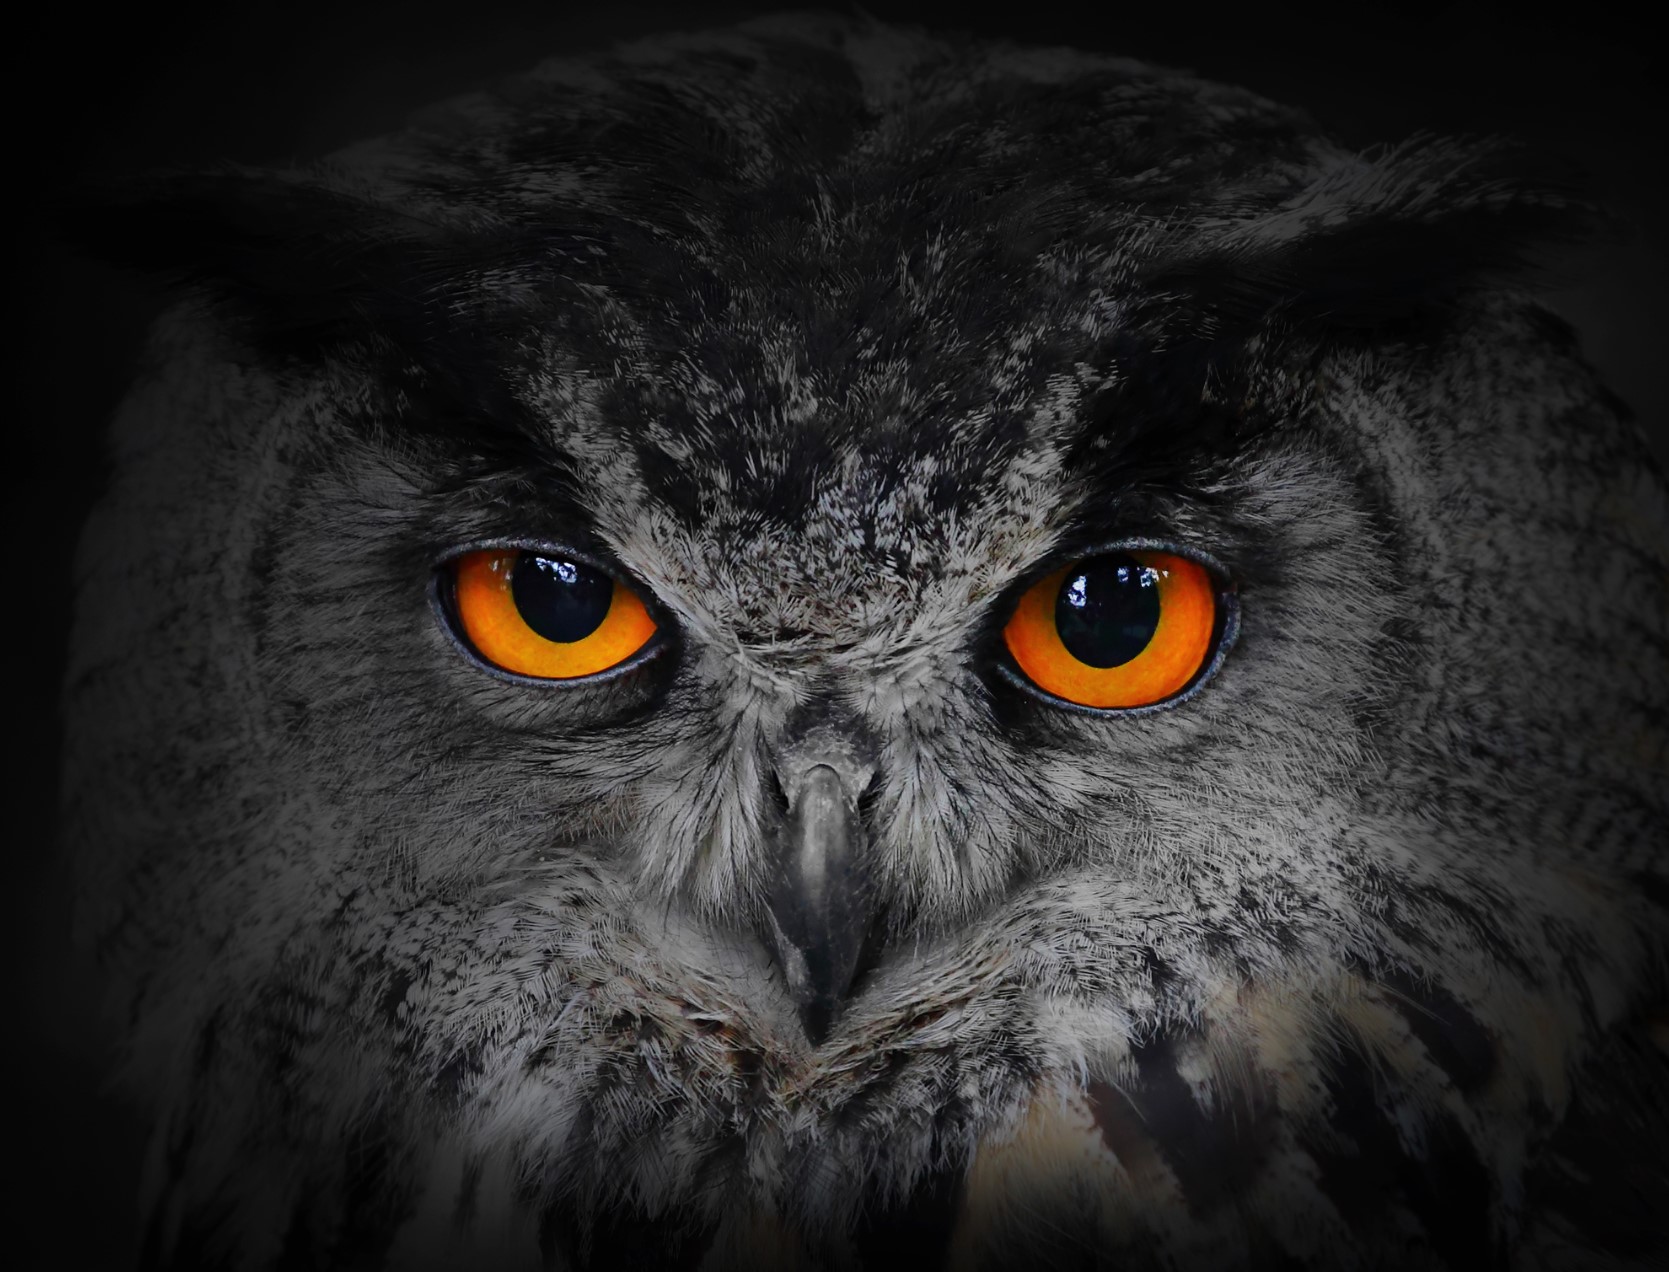 owl's orange eyes looking menacing at halloween in new york